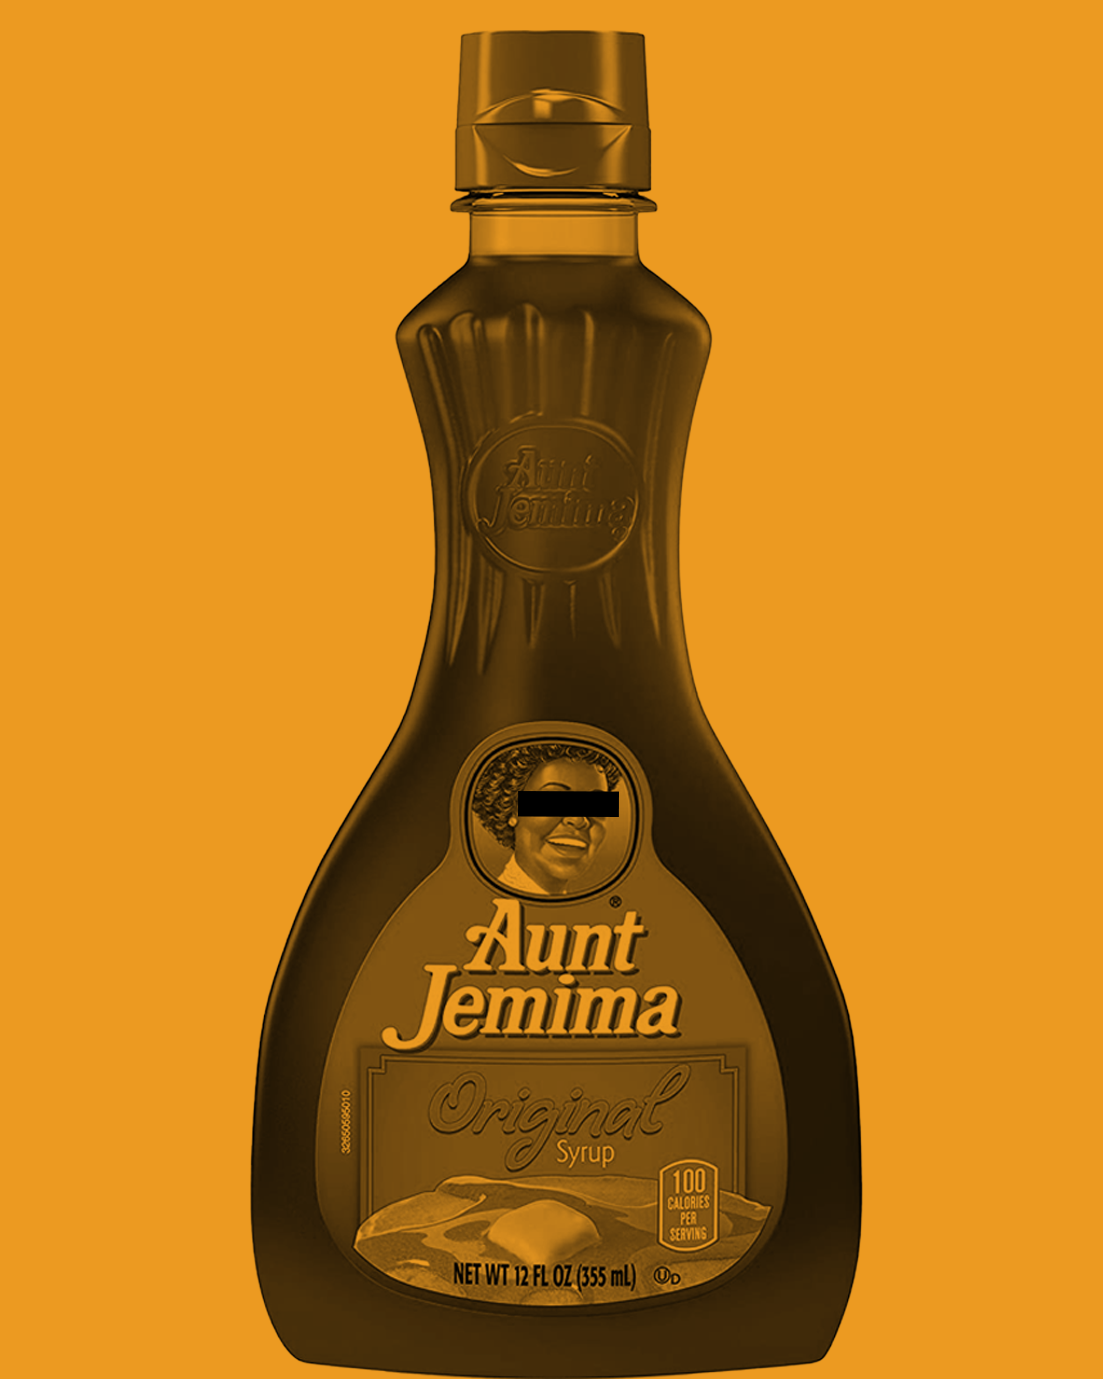 Aunt J. syrup bottle image